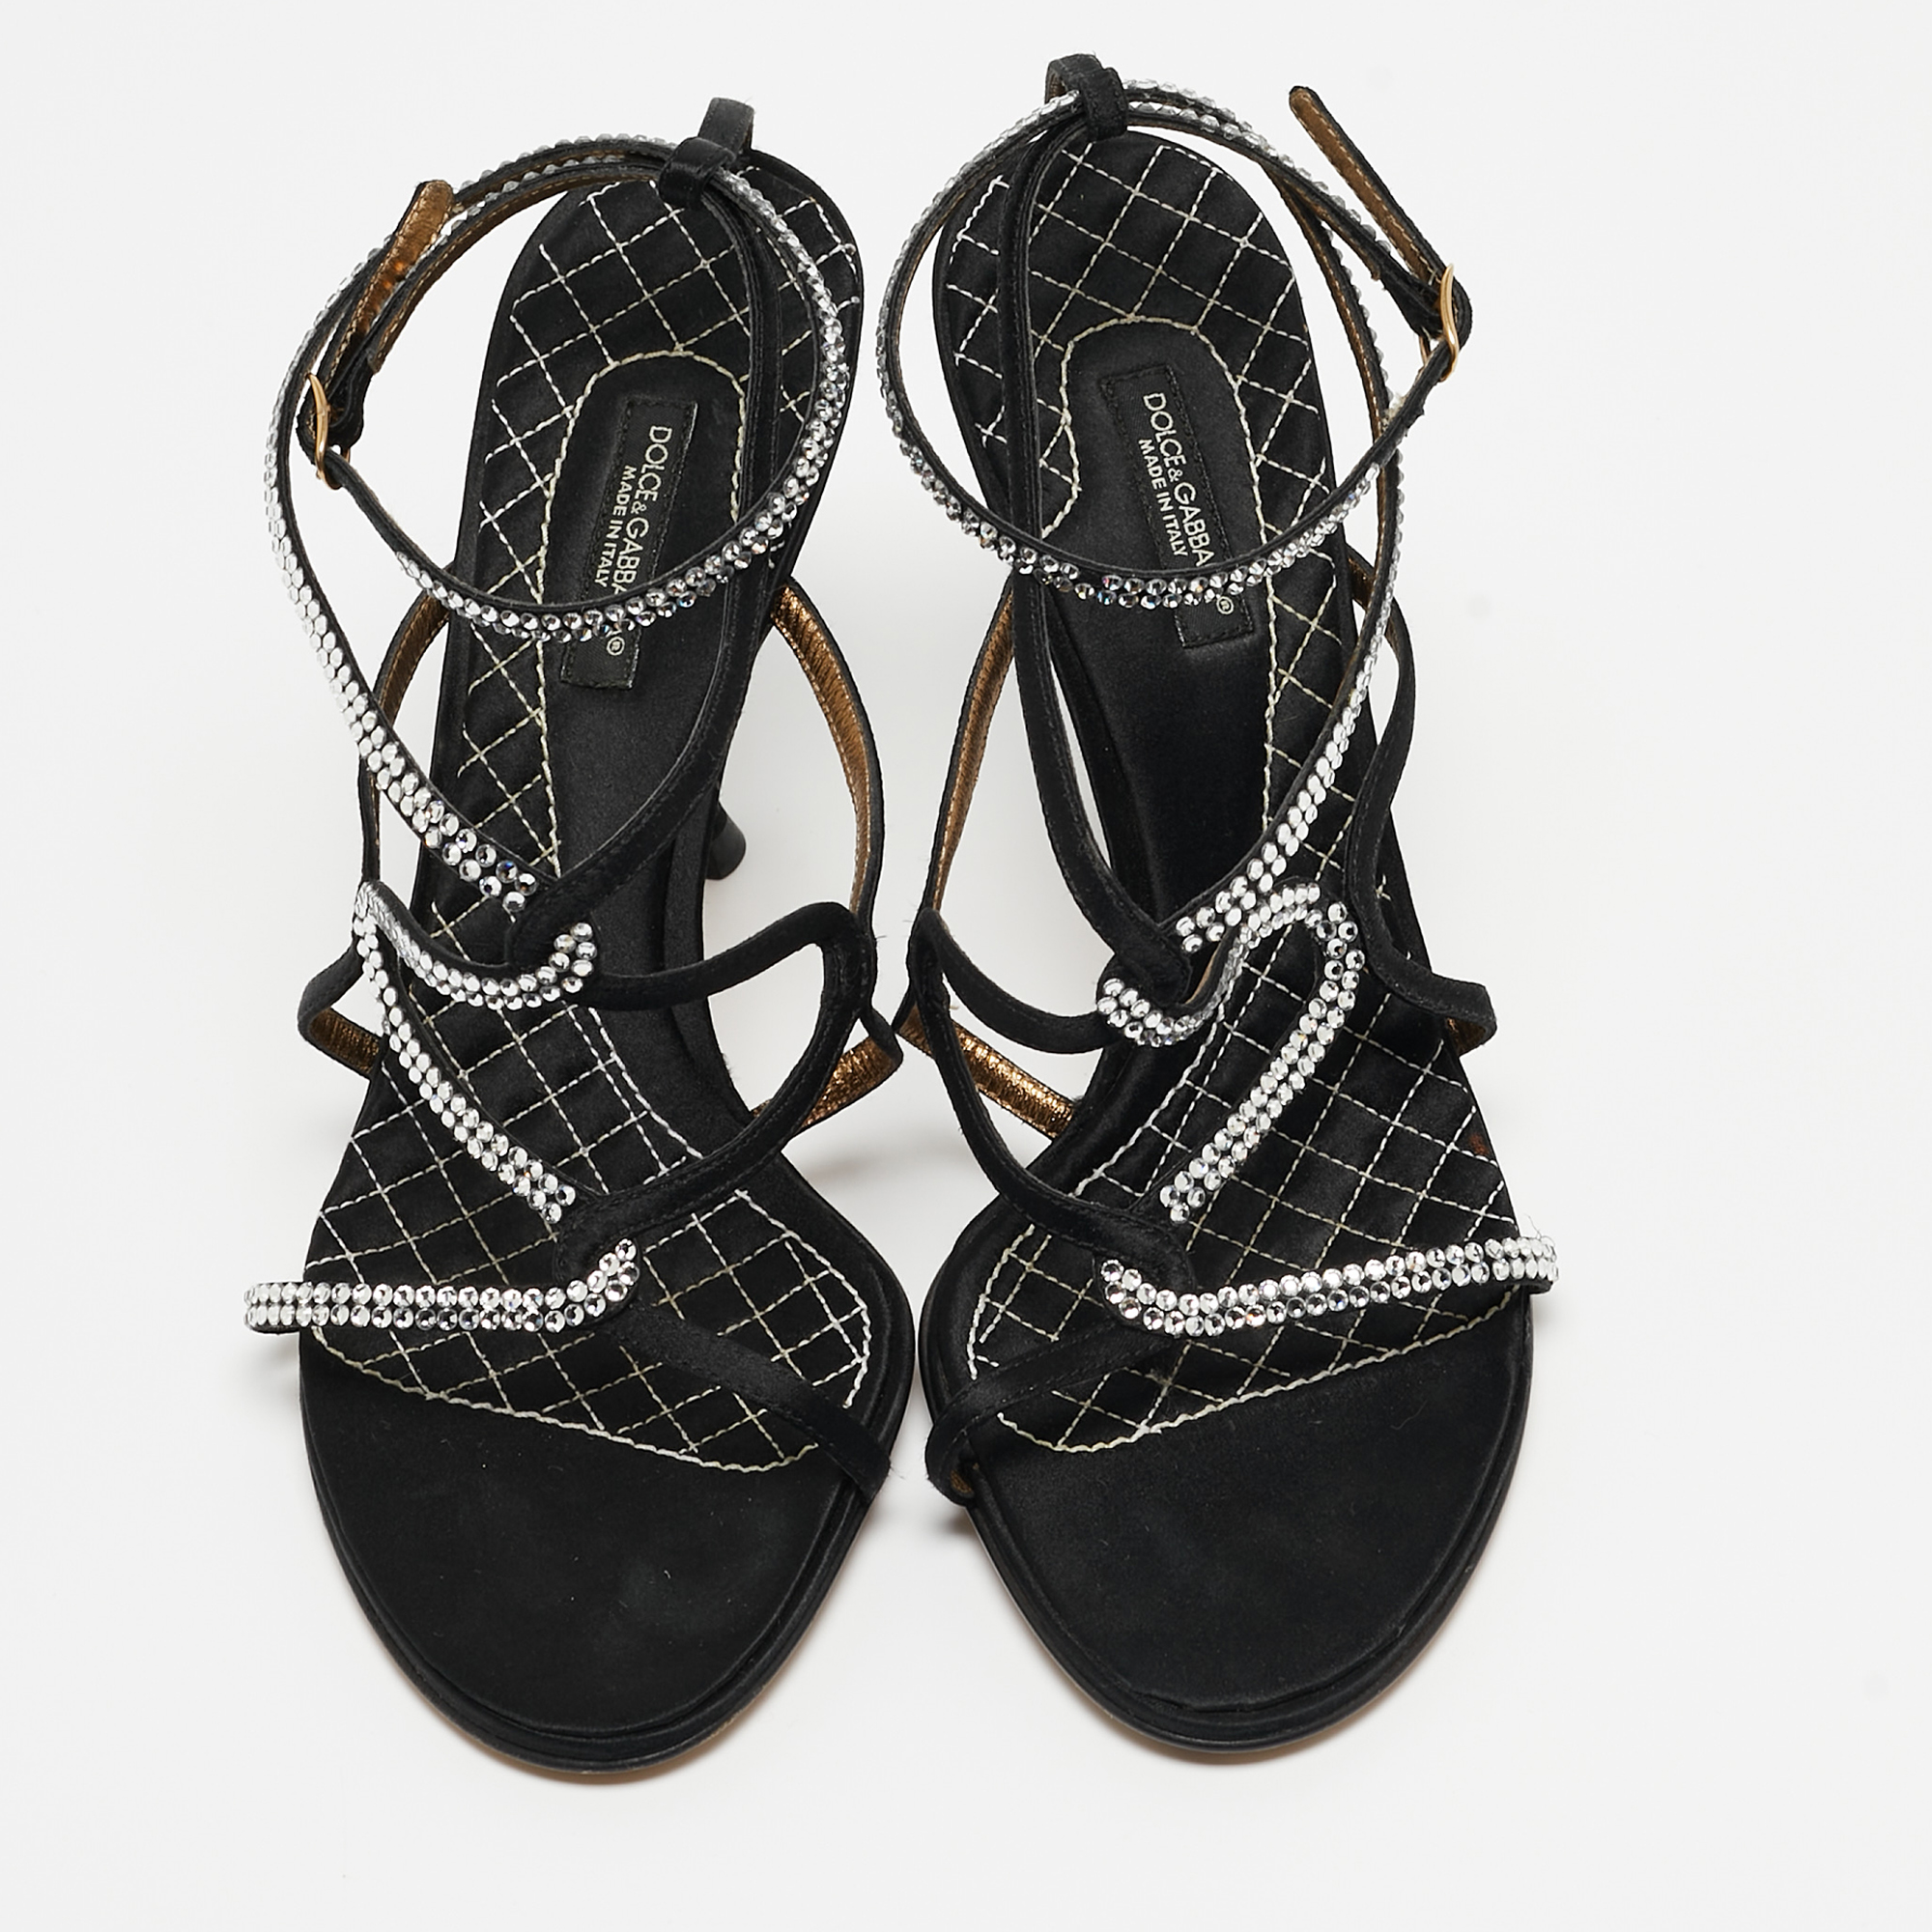 Dolce & Gabbana Black Satin Crystal Embellished Sandals Size 38